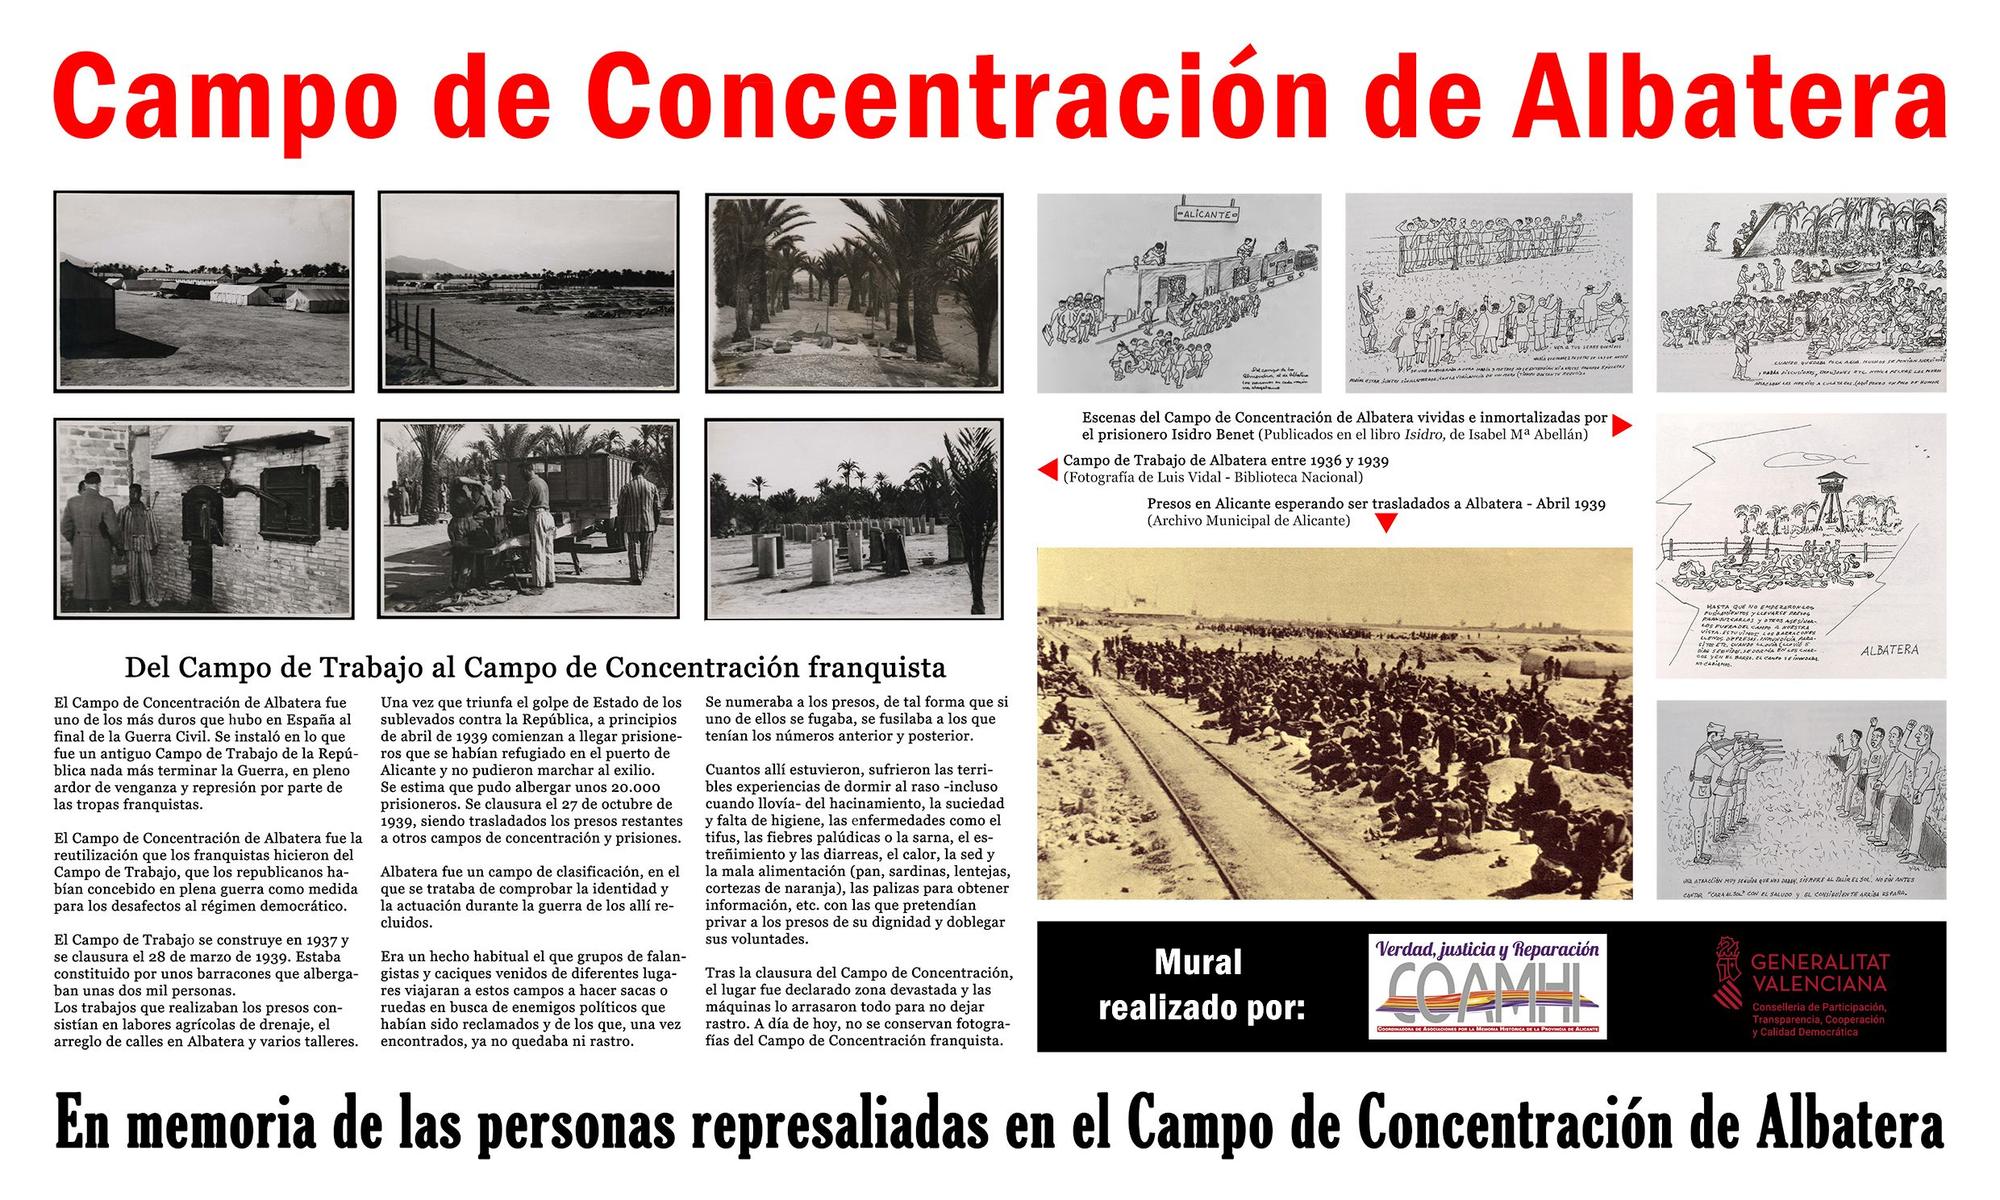 El campo de concentración de Albatera se instaló en lo que fue un antiguo Campo de Trabajo de la República.